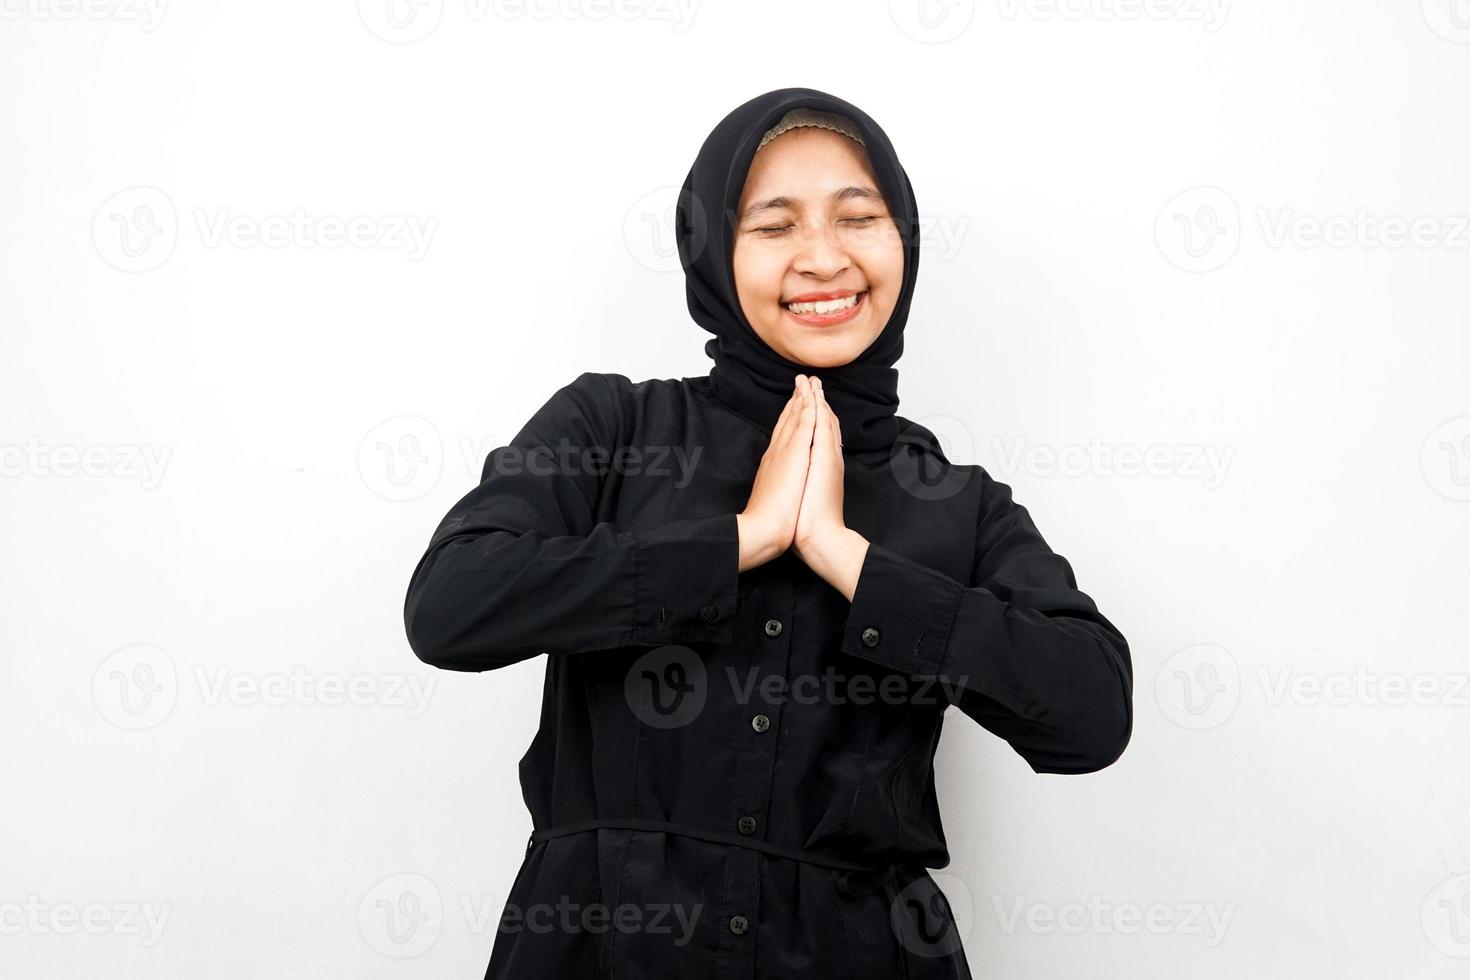 vacker och glad ung asiatisk muslimsk kvinna, händer på ansiktet, isolerad på vit bakgrund foto